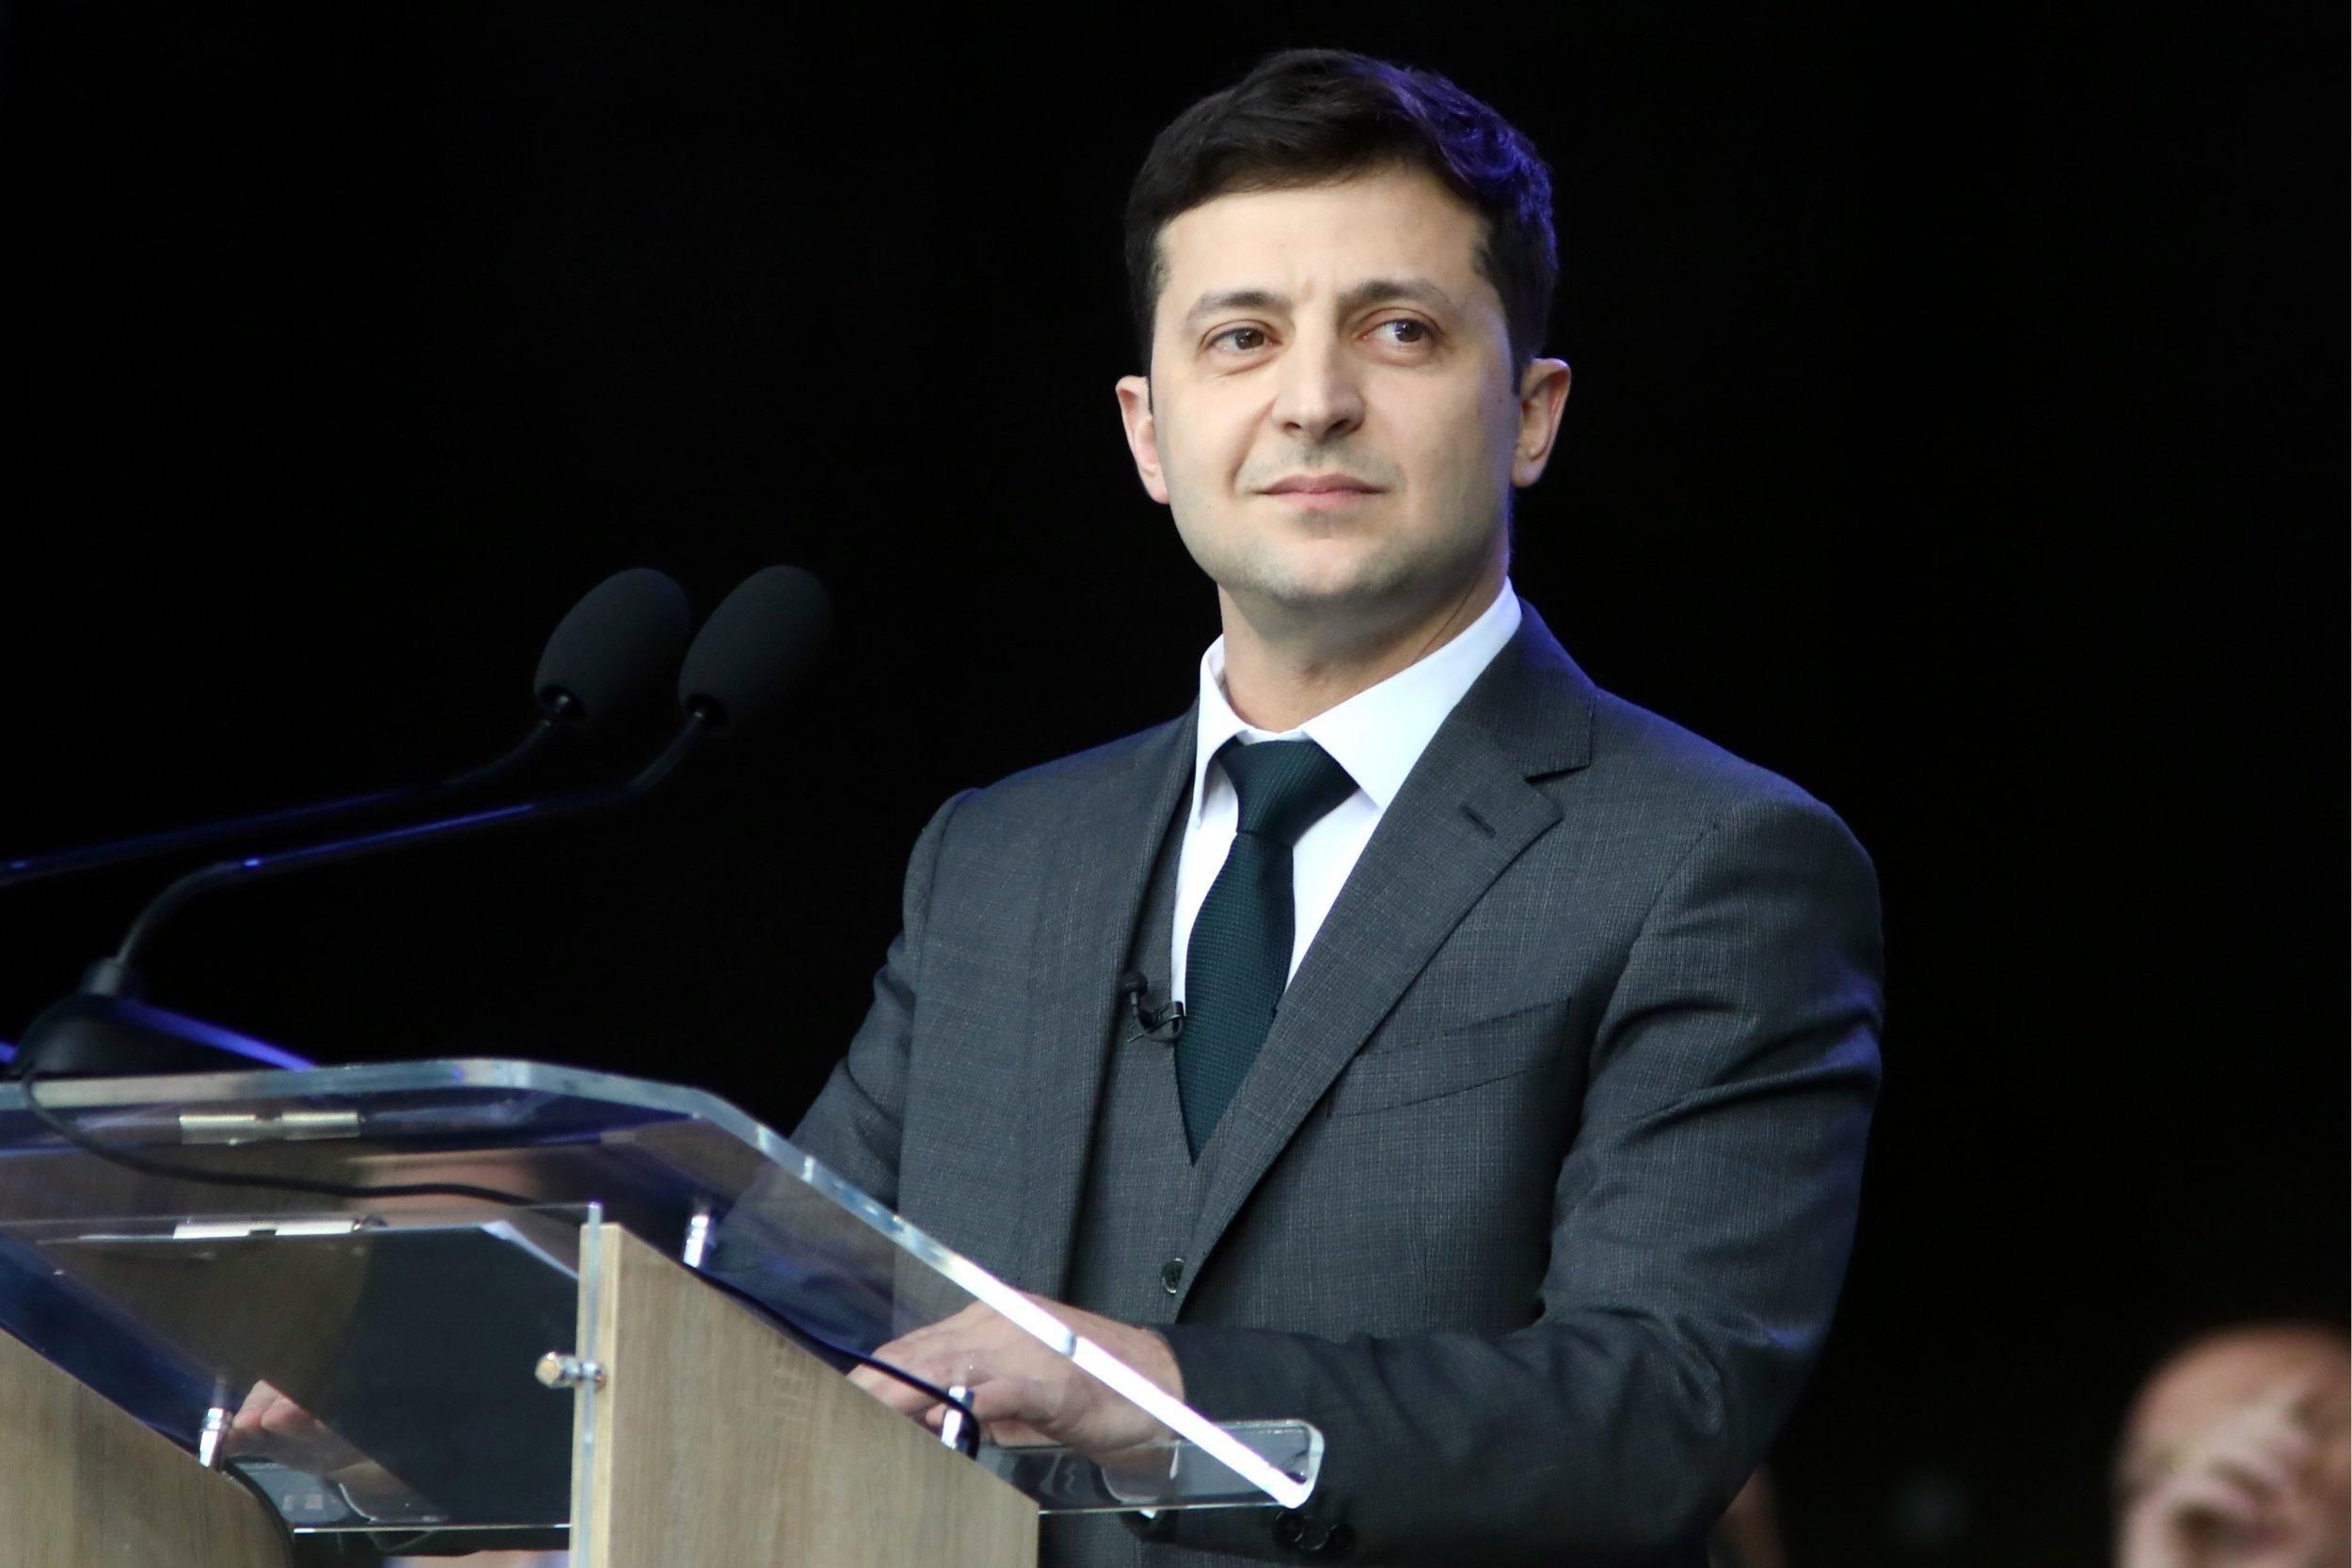 Зеленский принял присягу и стал президентом Украины 2019